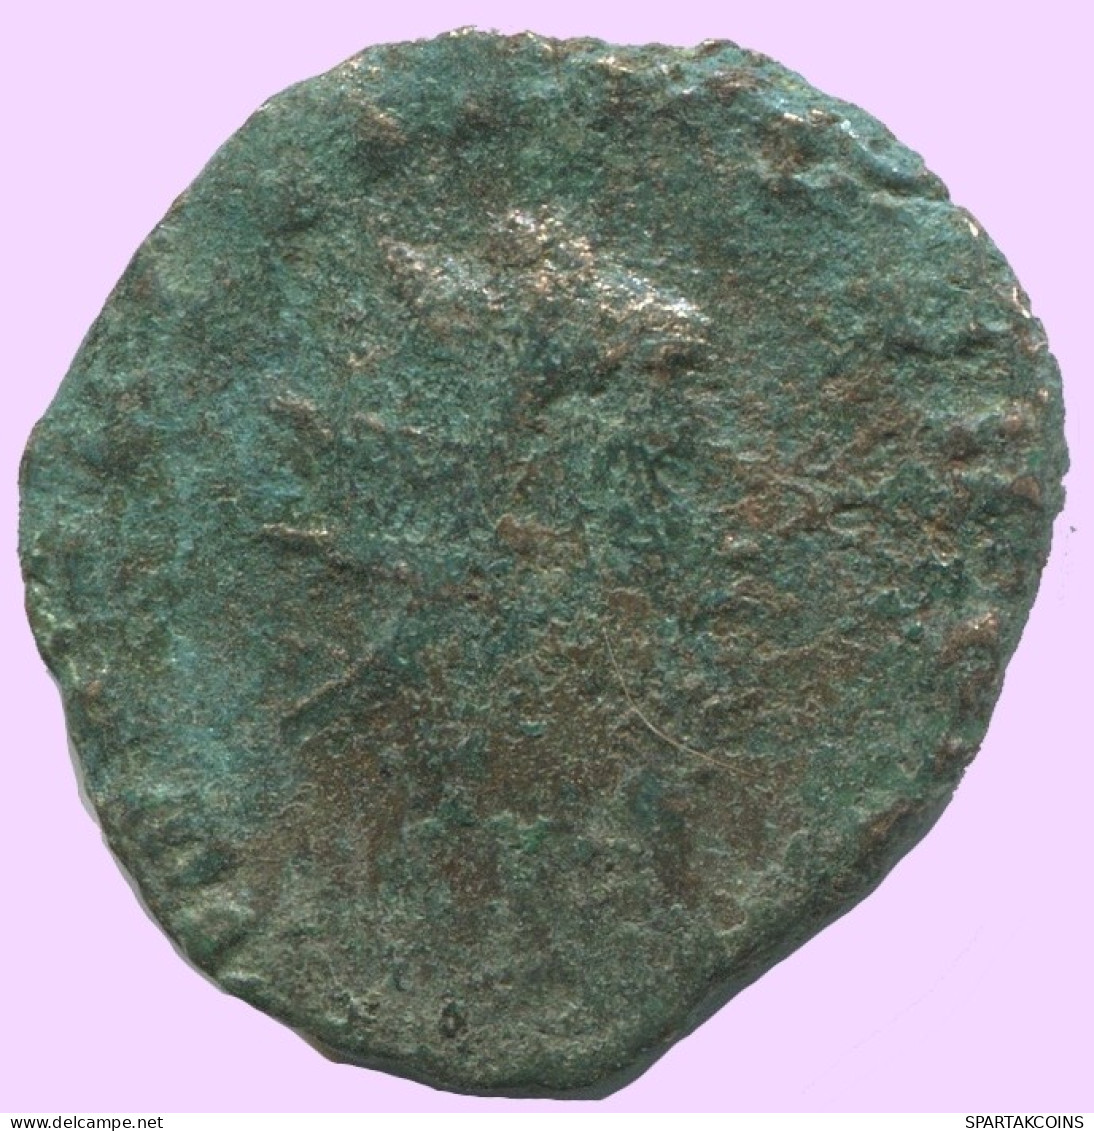 LATE ROMAN EMPIRE Follis Ancient Authentic Roman Coin 1.9g/18mm #ANT2071.7.U.A - The End Of Empire (363 AD Tot 476 AD)